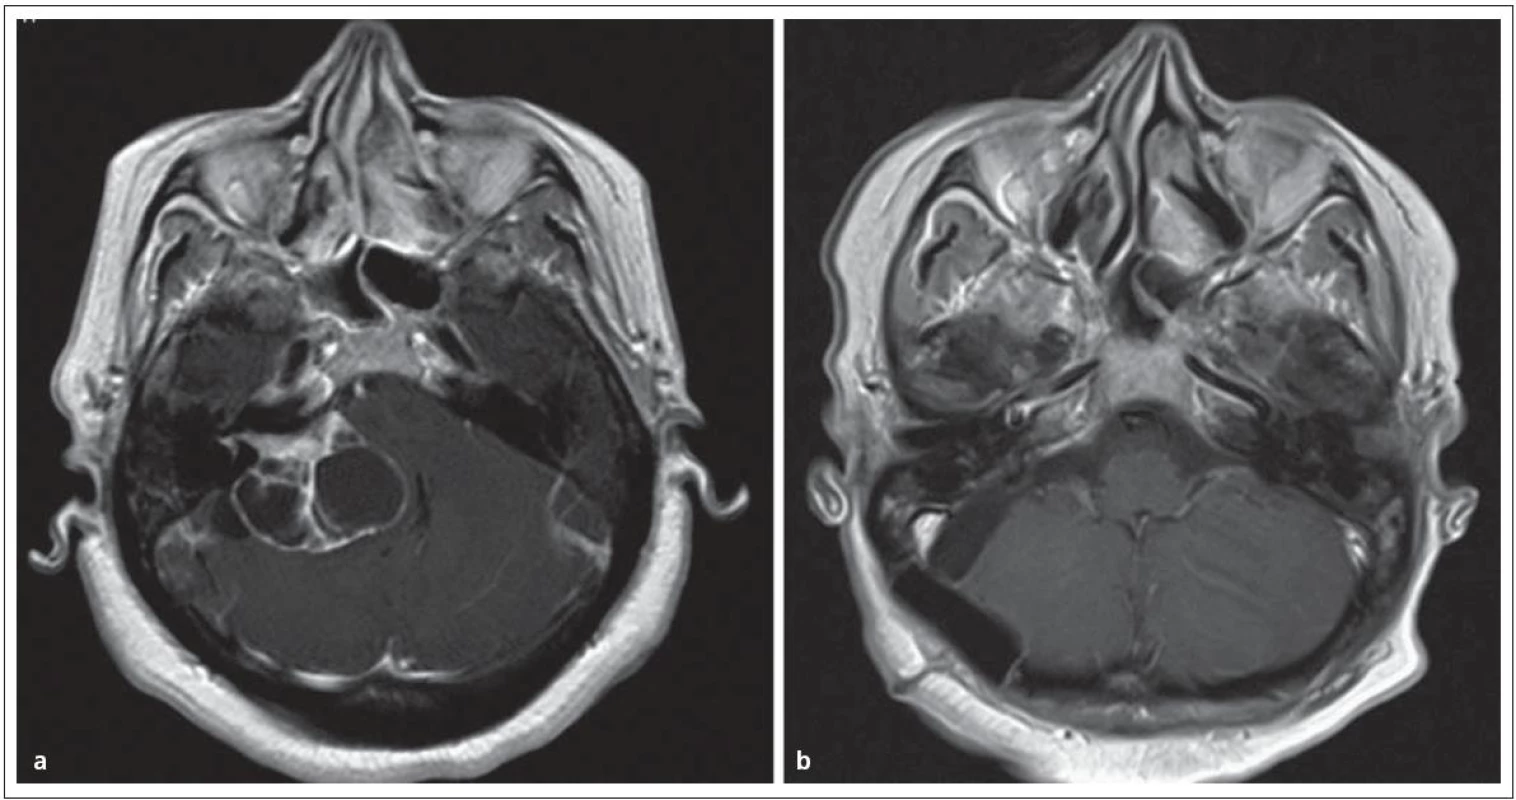 Cystický vestibulární schwannom st. IV.
Obr. 6a) MR před operací.
Obr. 6b) Úplné odstranění nádoru se zachováním lícního nervu.